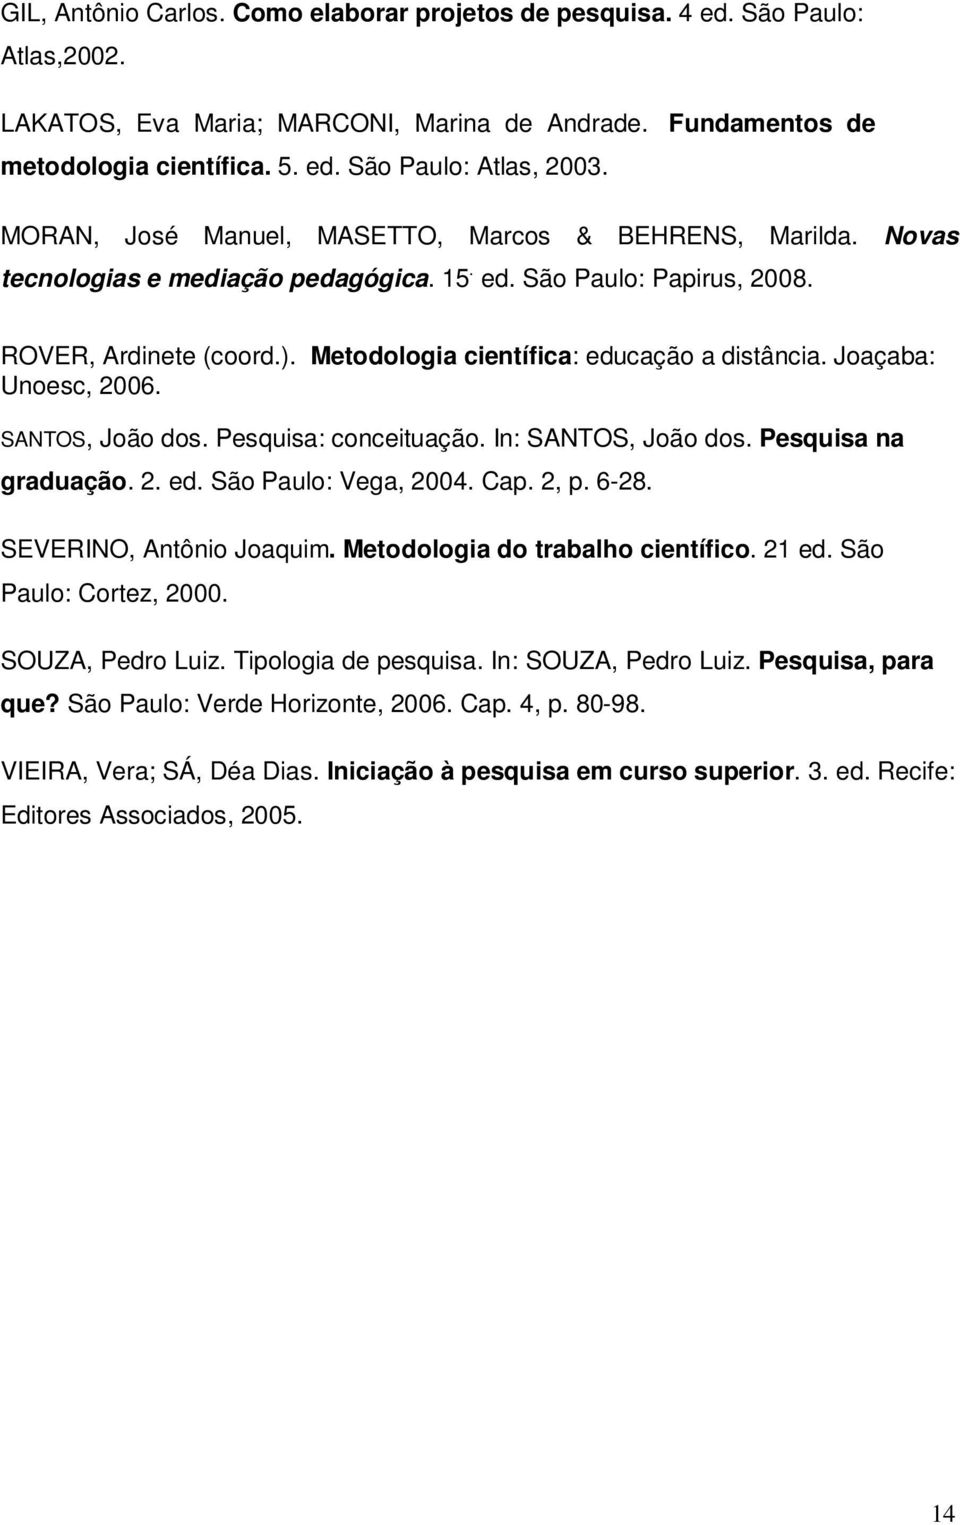 Metodologia científica: educação a distância. Joaçaba: Unoesc, 2006. SANTOS, João dos. Pesquisa: conceituação. In: SANTOS, João dos. Pesquisa na graduação. 2. ed. São Paulo: Vega, 2004. Cap. 2, p.